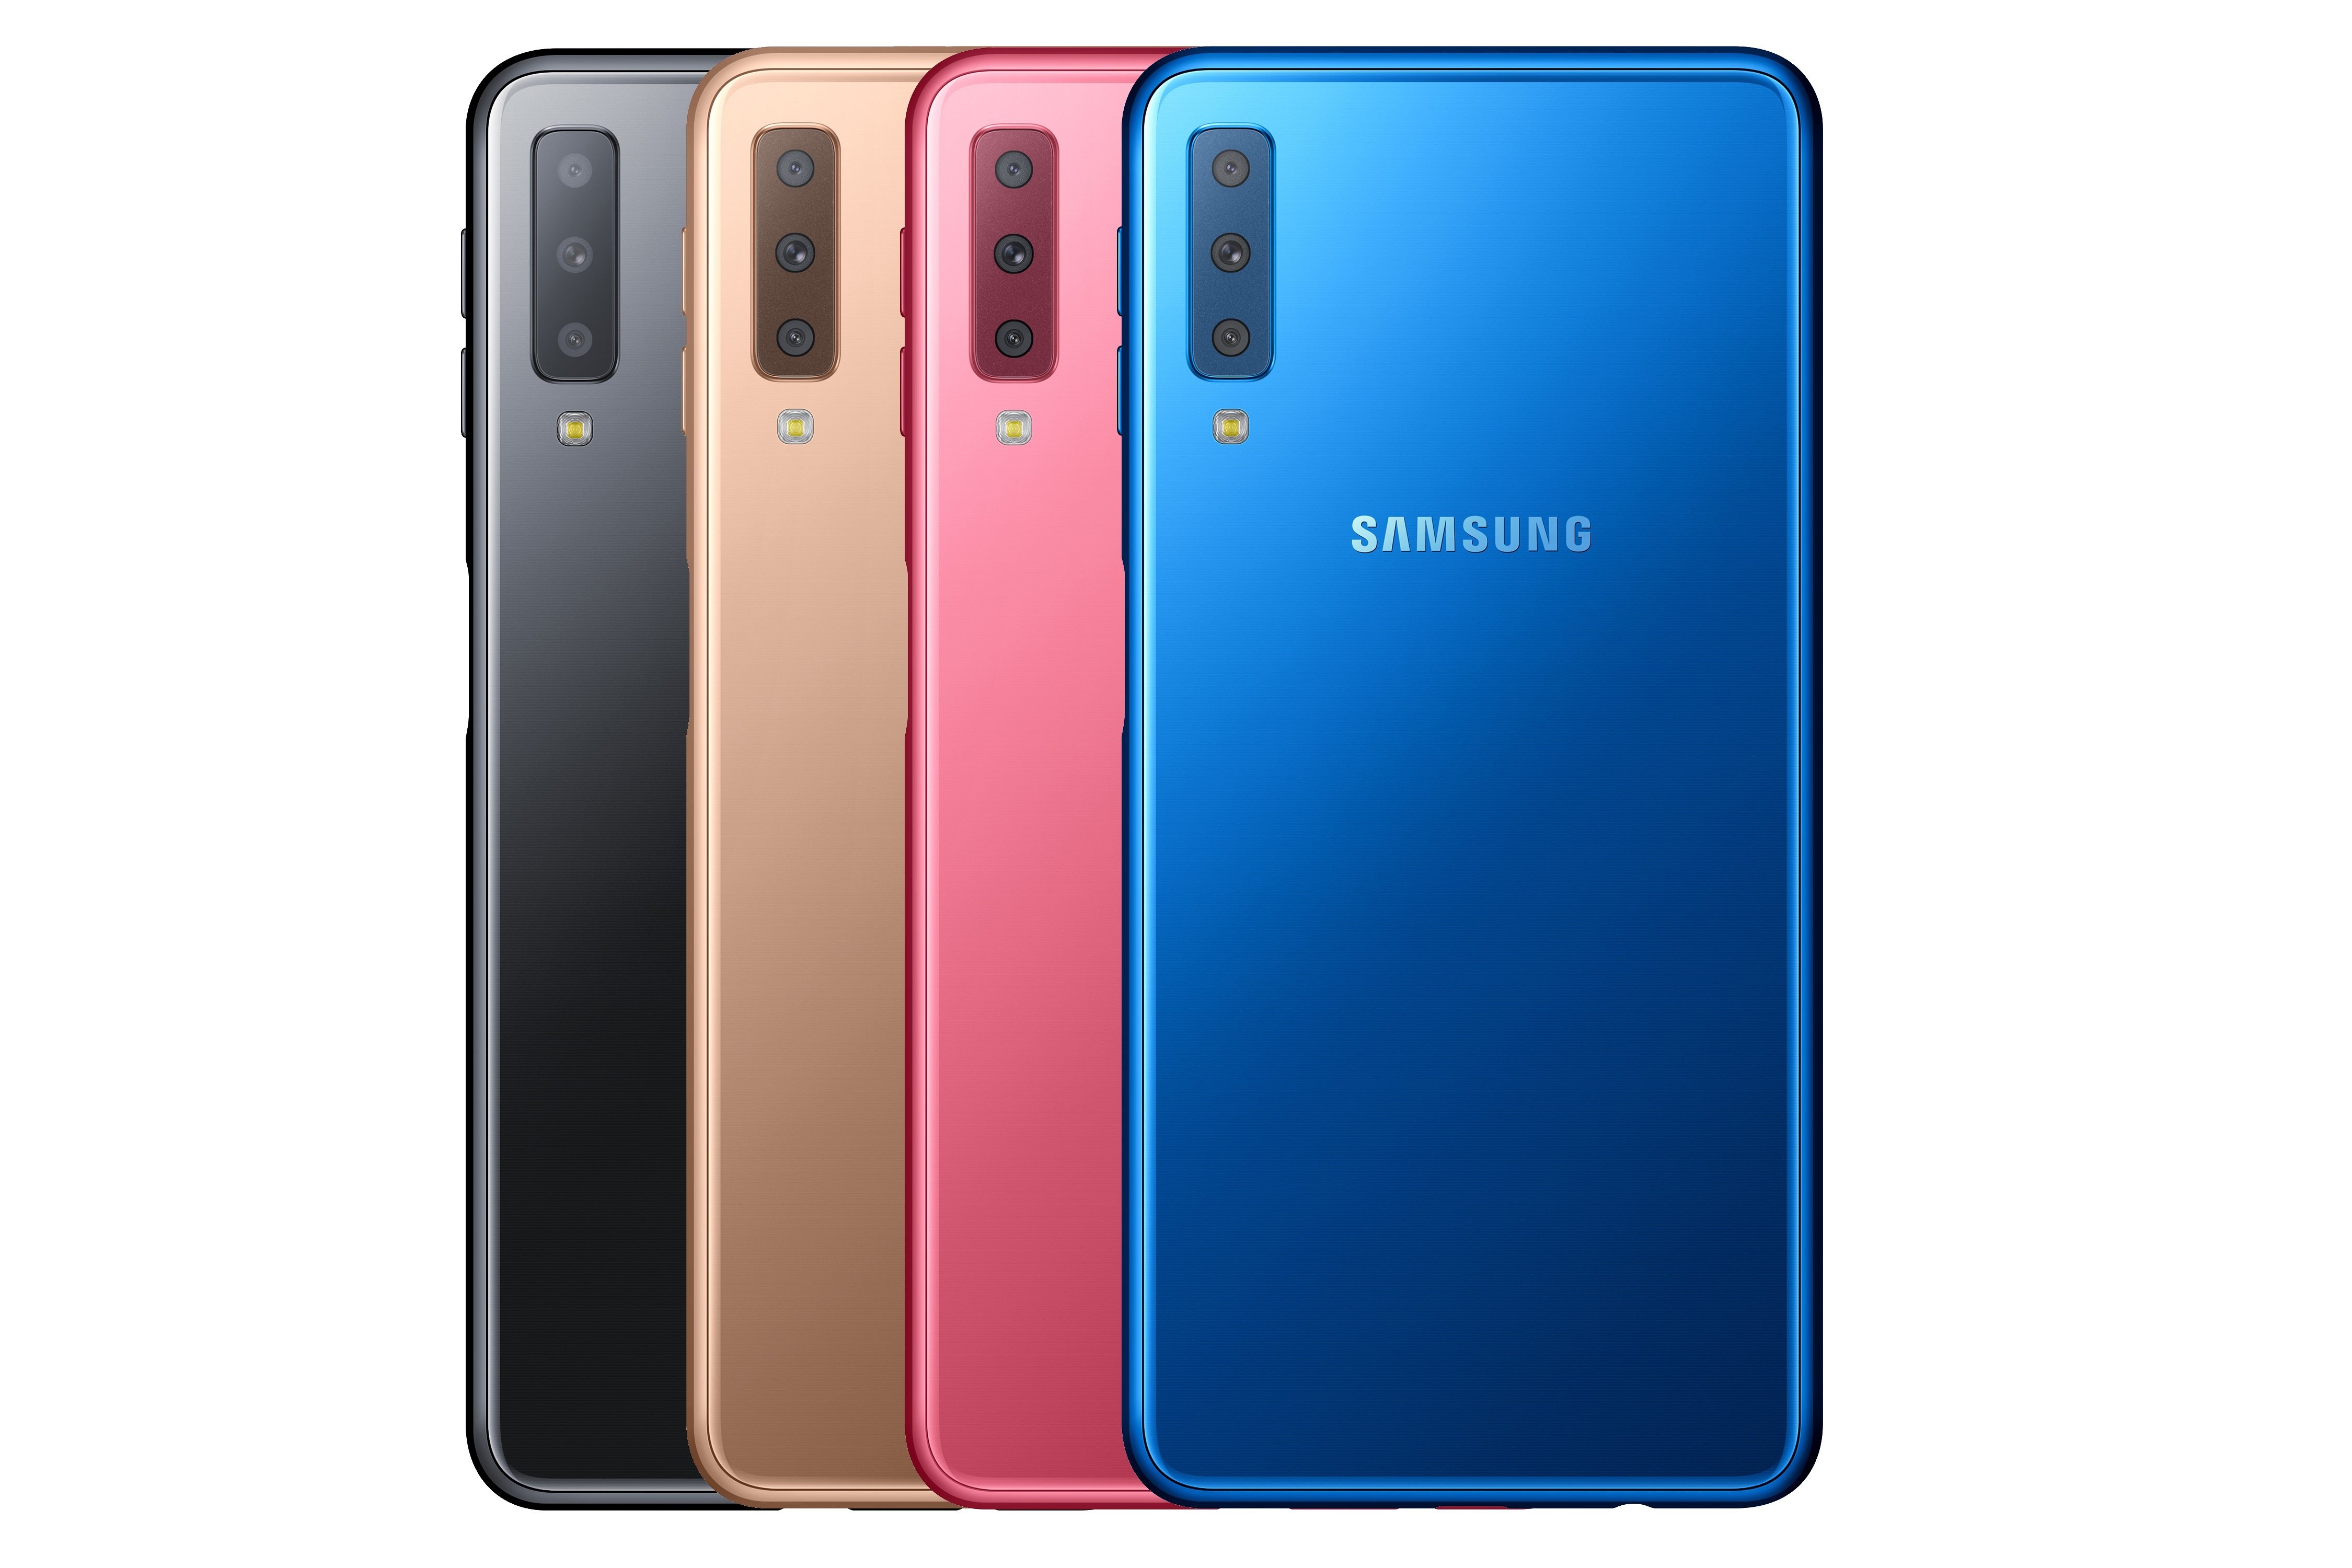 Samsung Galaxy a7 2018